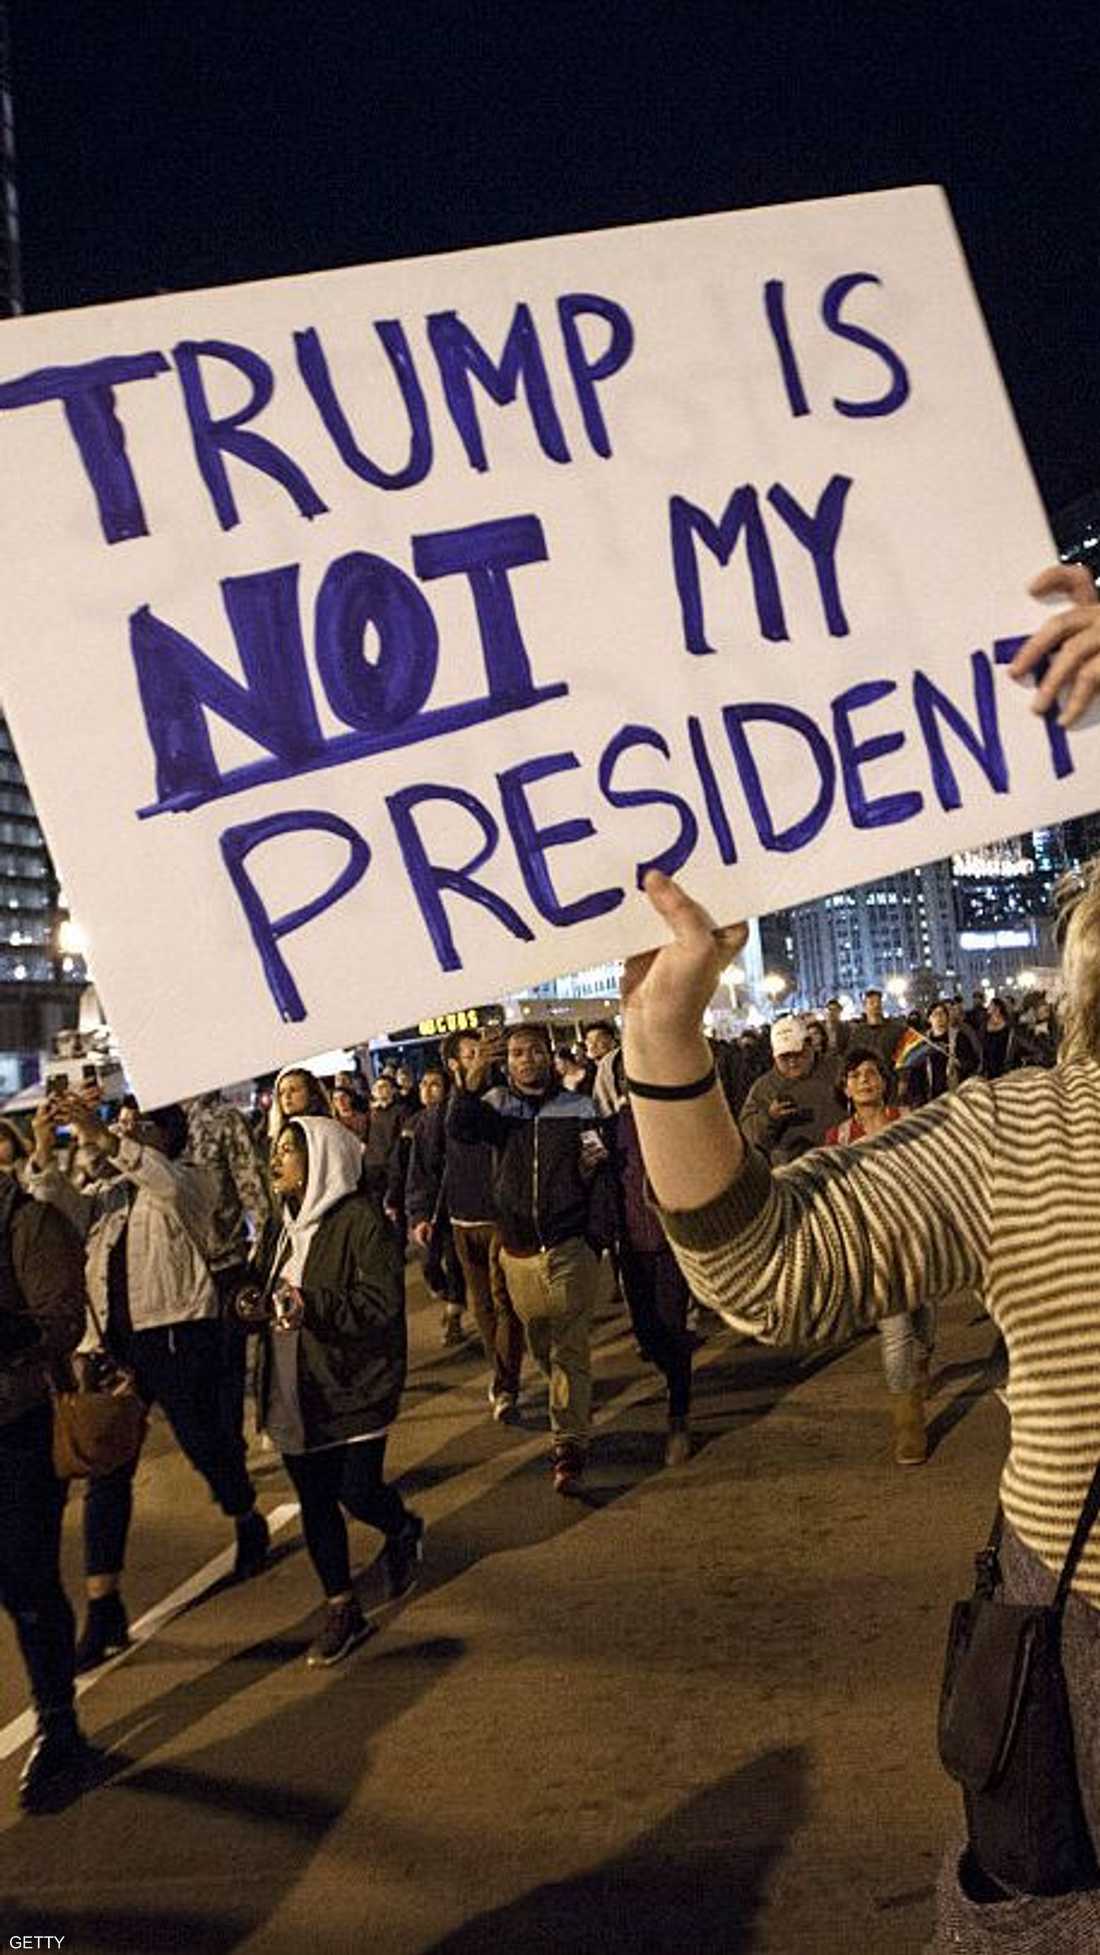 أميركيون يرفعون لافتات في إلينوي، يقولون فيها "ليس رئيسي"